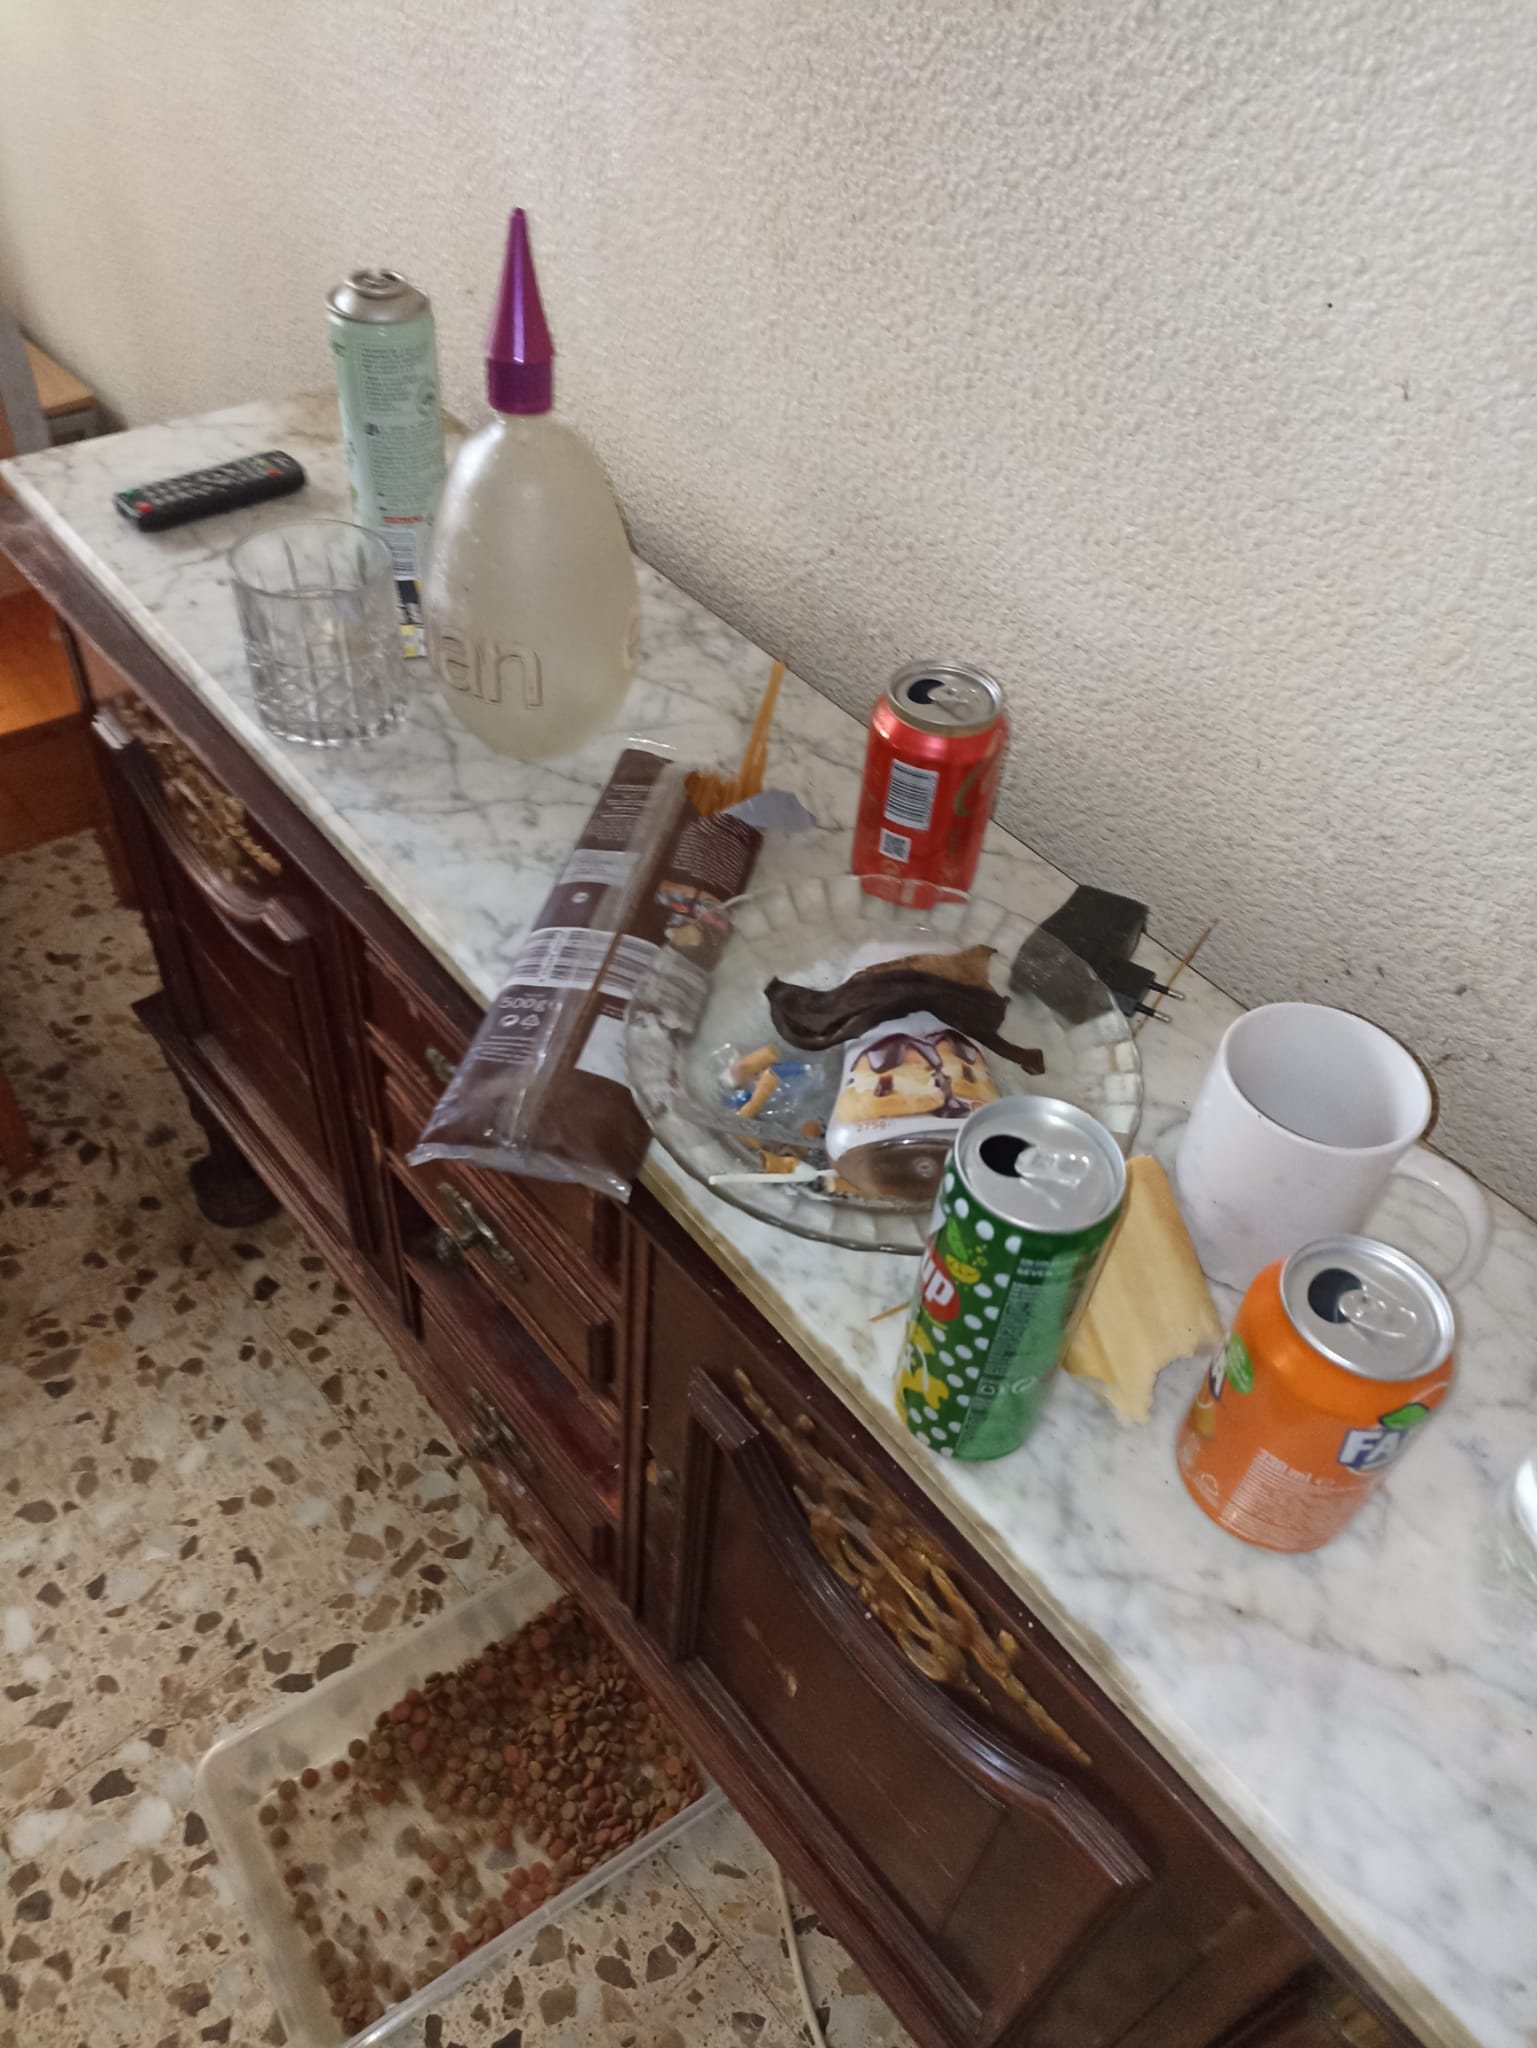 Servicio de vaciado de pisos en Santa Oliva - Recogida de muebles viejos y enseres